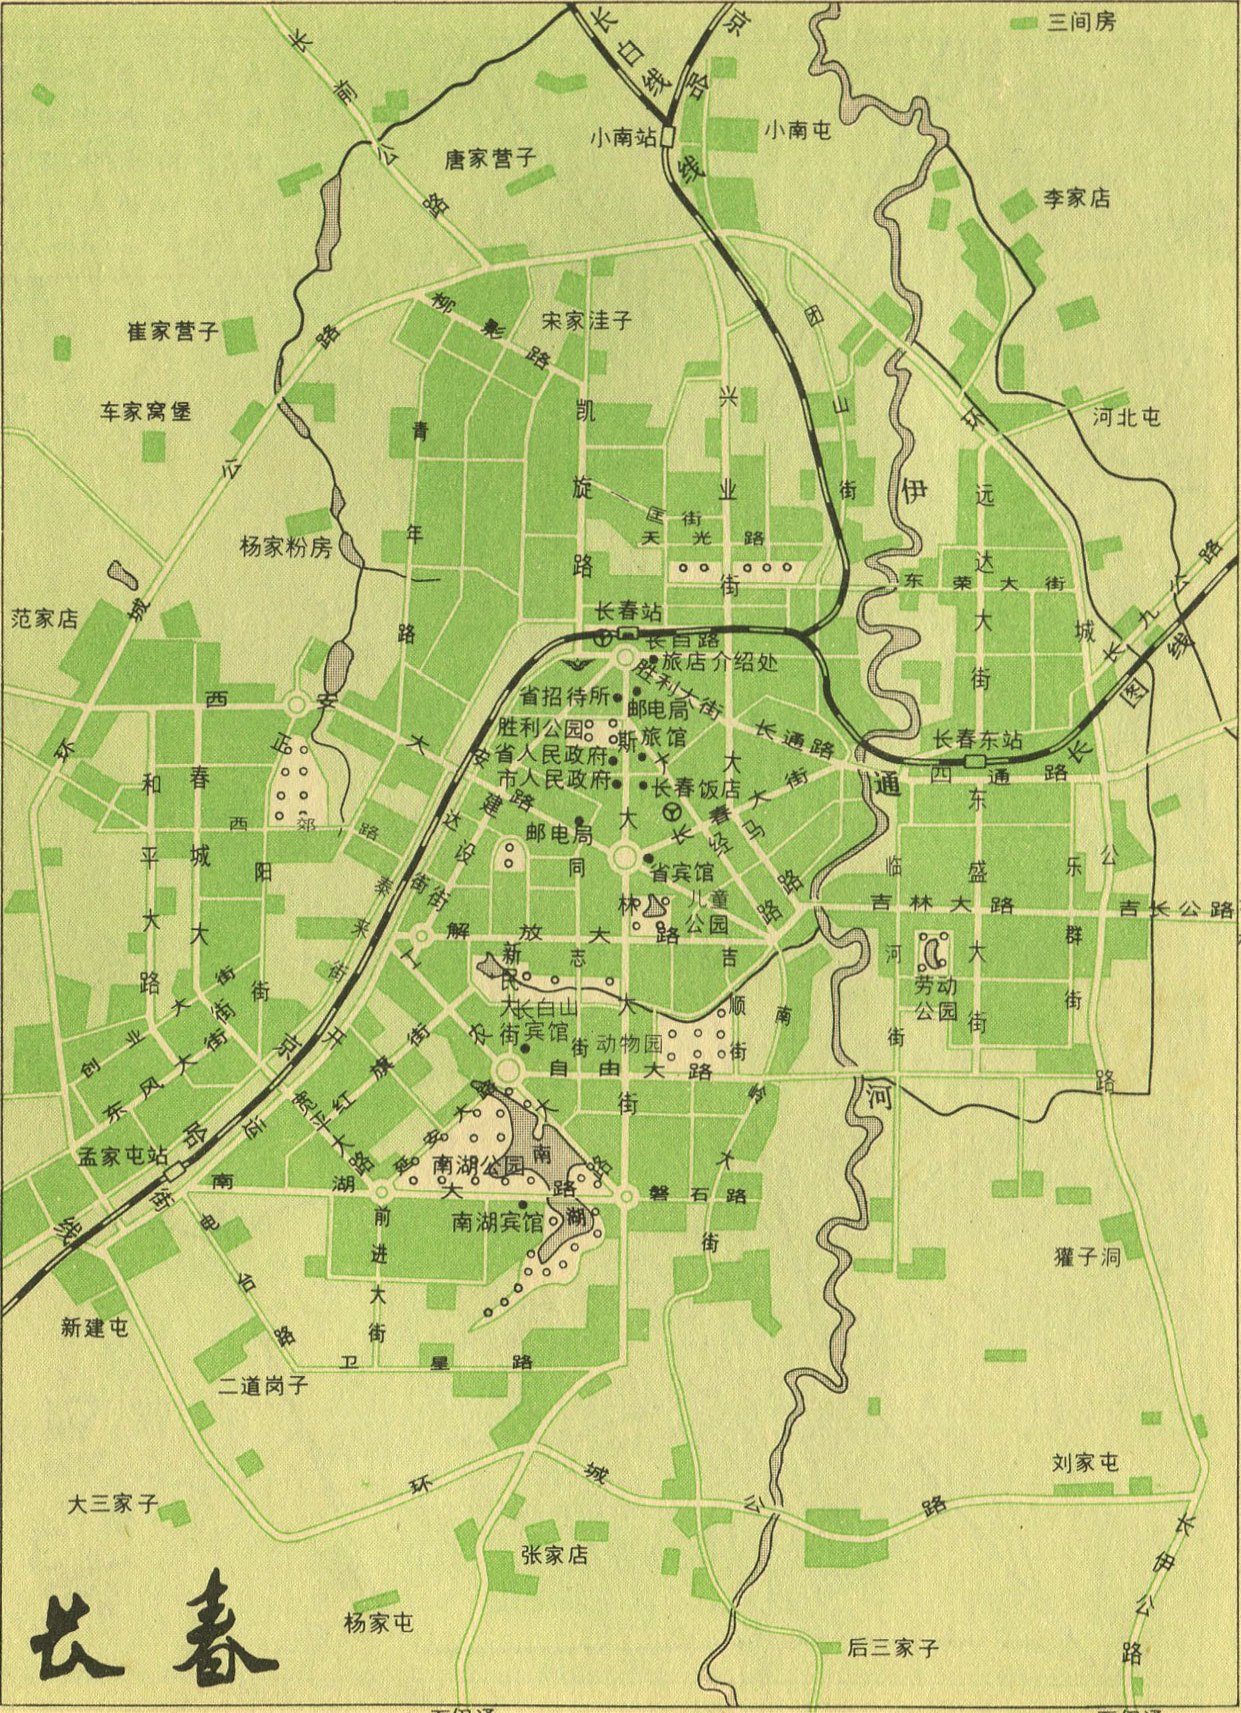 长春市各区划分图-9_长春市各区划分图,长春市学区划分图; 